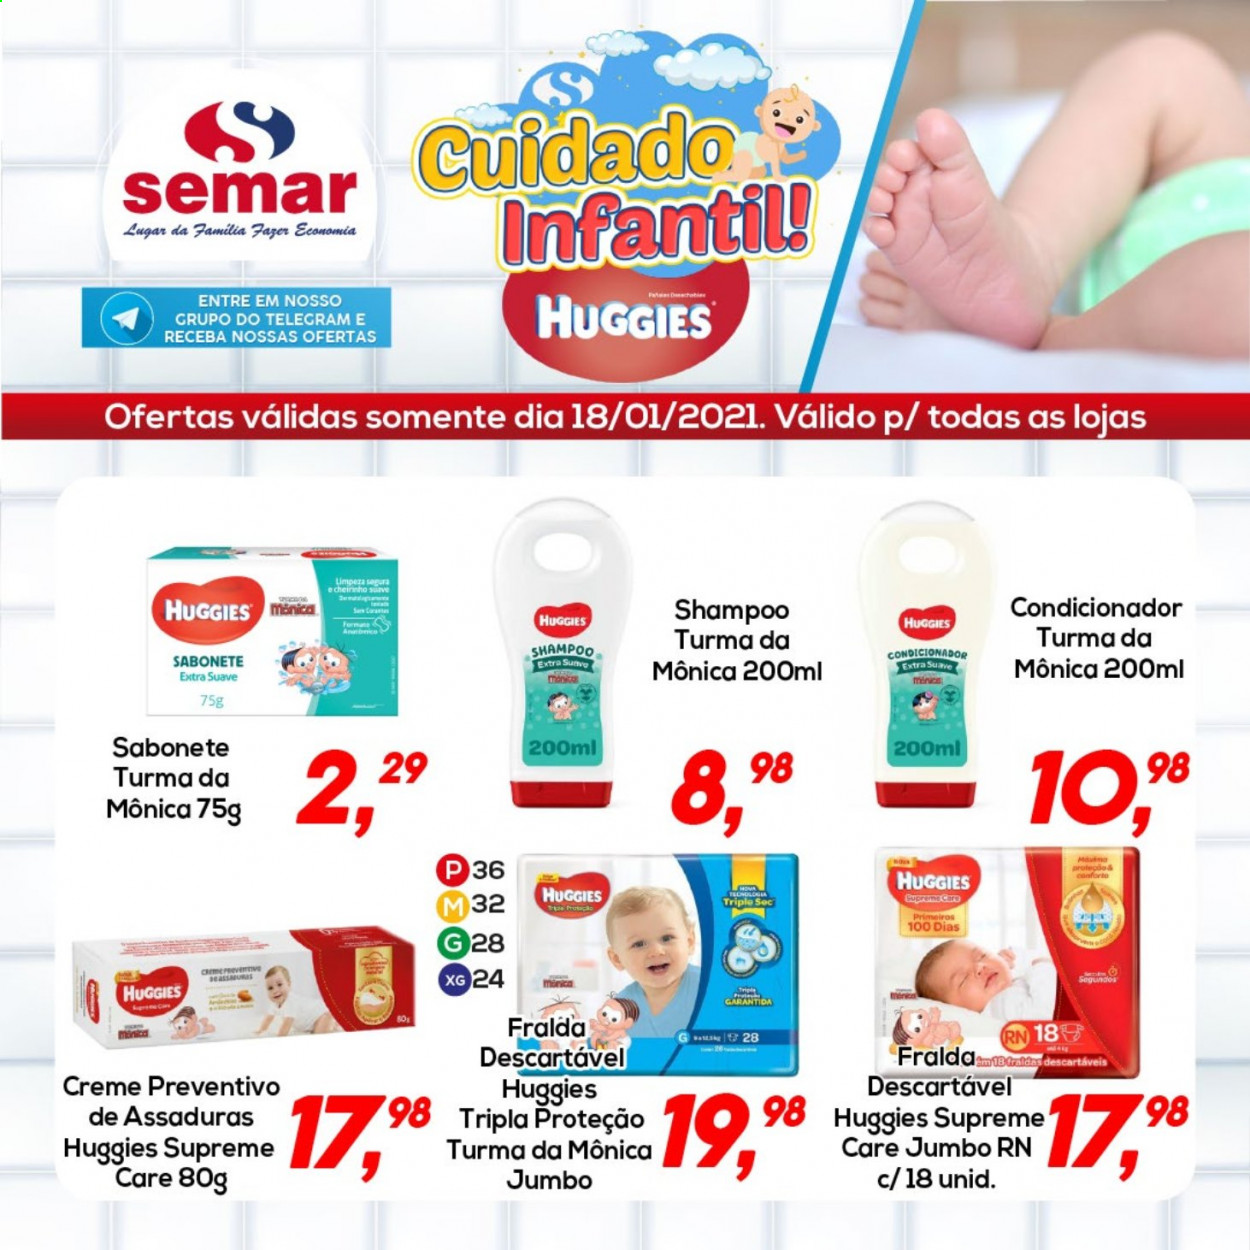 thumbnail - Folheto Semar Supermercados - 18/01/2021 - 18/01/2021 - Produtos em promoção - fralda descartável, Huggies, fraldas, sabonete, shampoo, condicionador. Página 1.